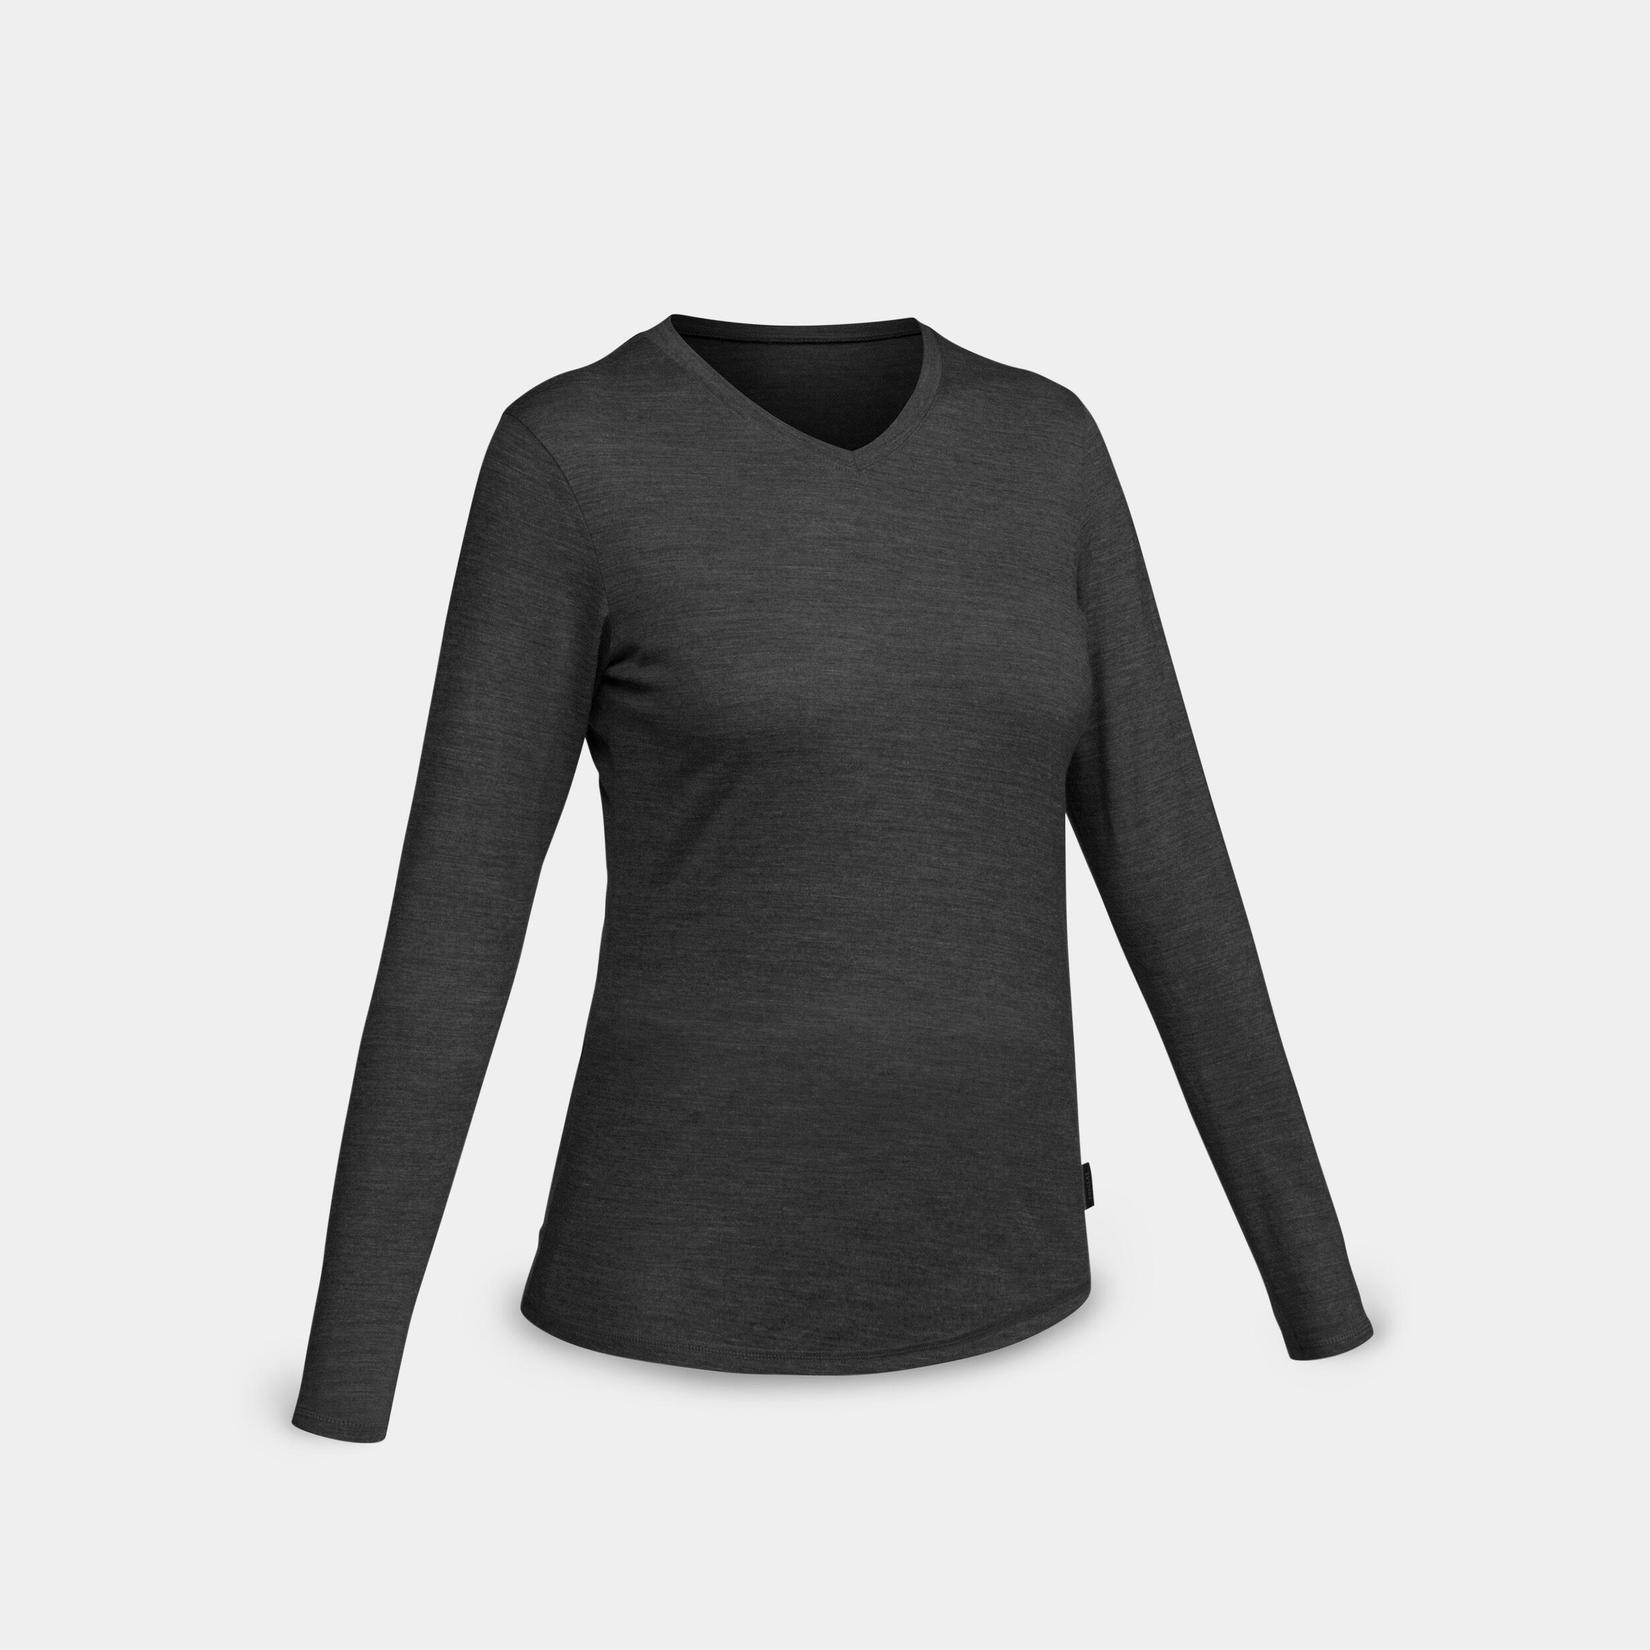 Προσφορά Γυναικείο t-shirt από μαλλί merino για πεζοπορία και ταξίδια - TRAVEL 500 για 30€ σε Decathlon